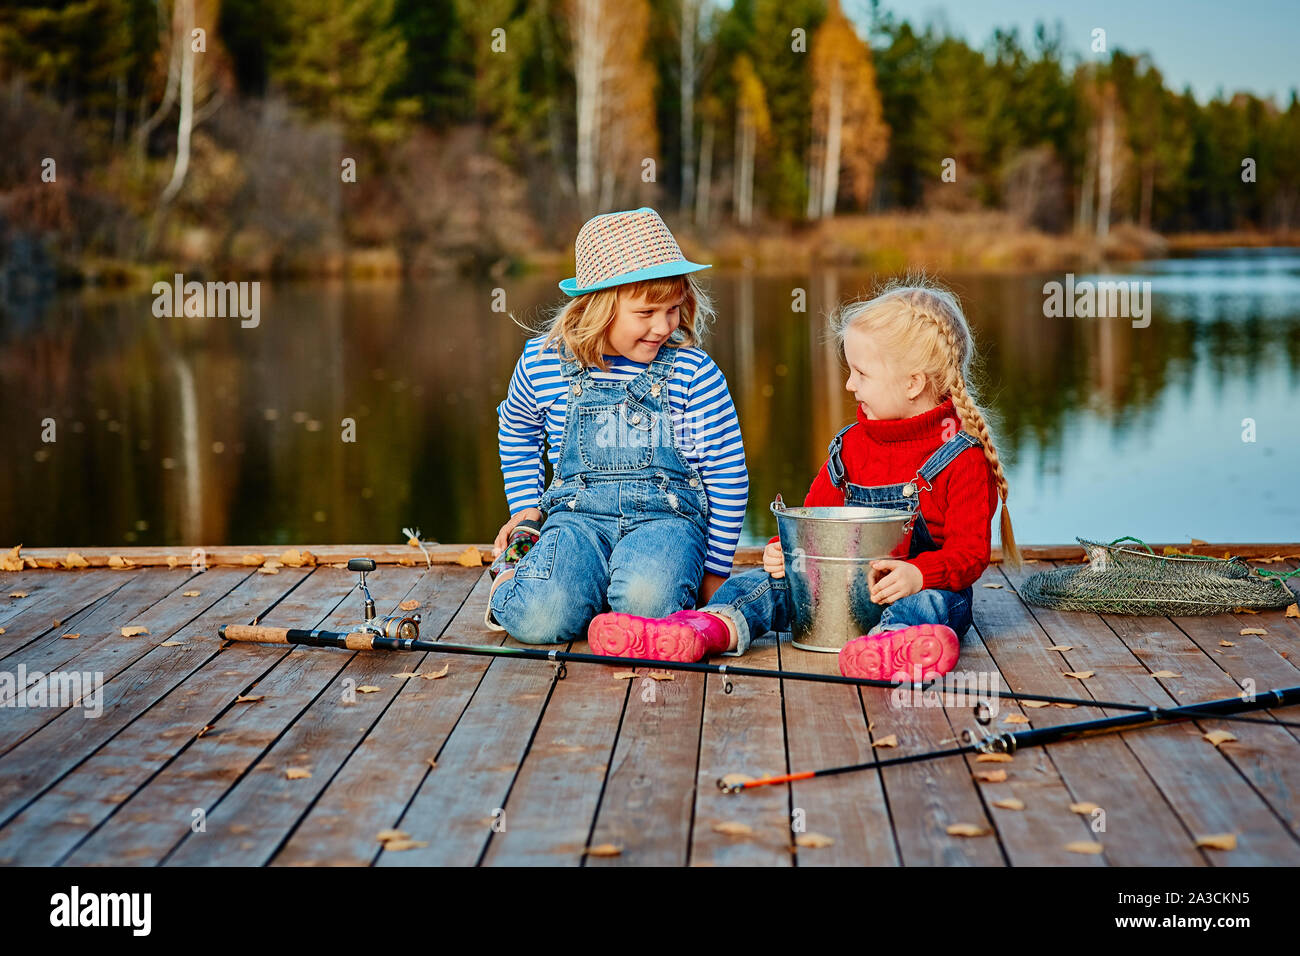 Deux petites sœurs ou vos amis de s'asseoir avec des cannes à pêche sur une jetée en bois. Ils ont attrapé un poisson et le mettre dans un seau. Ils sont heureux avec leurs prises et d Banque D'Images